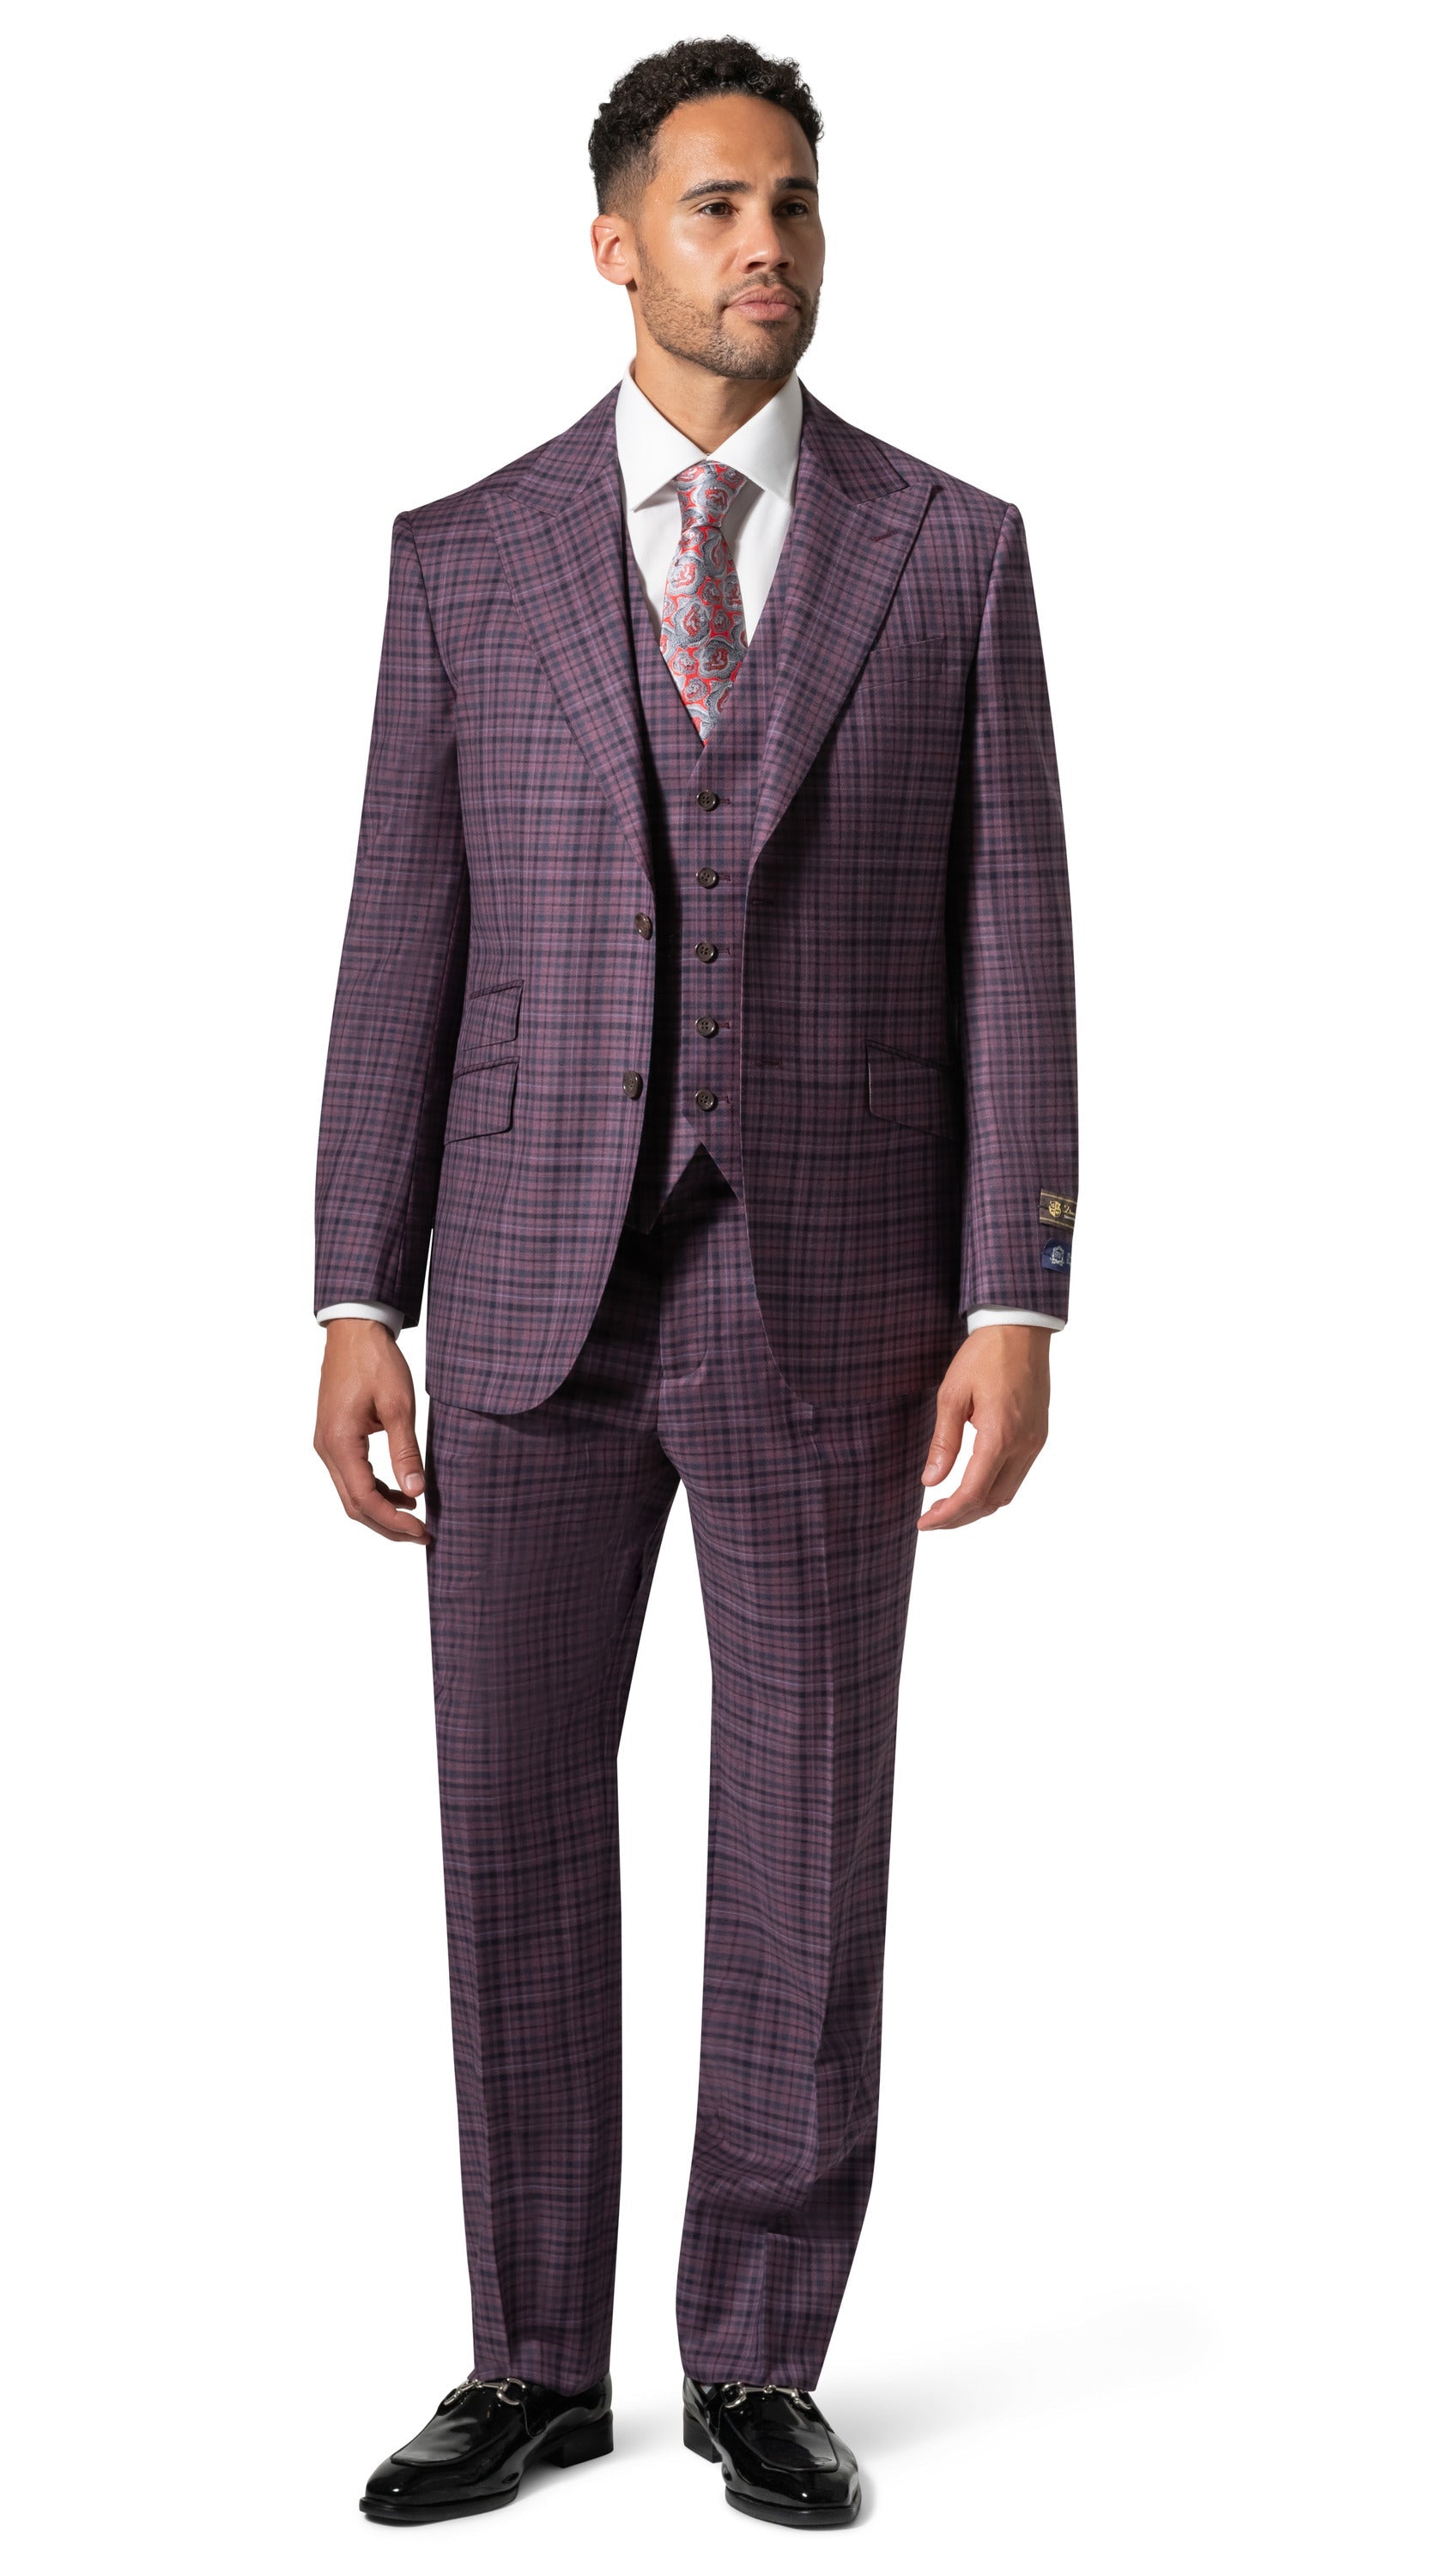 Berragamo Essex Elegant - Faille Wool Solid Suit 10005.4099 Big & Tall